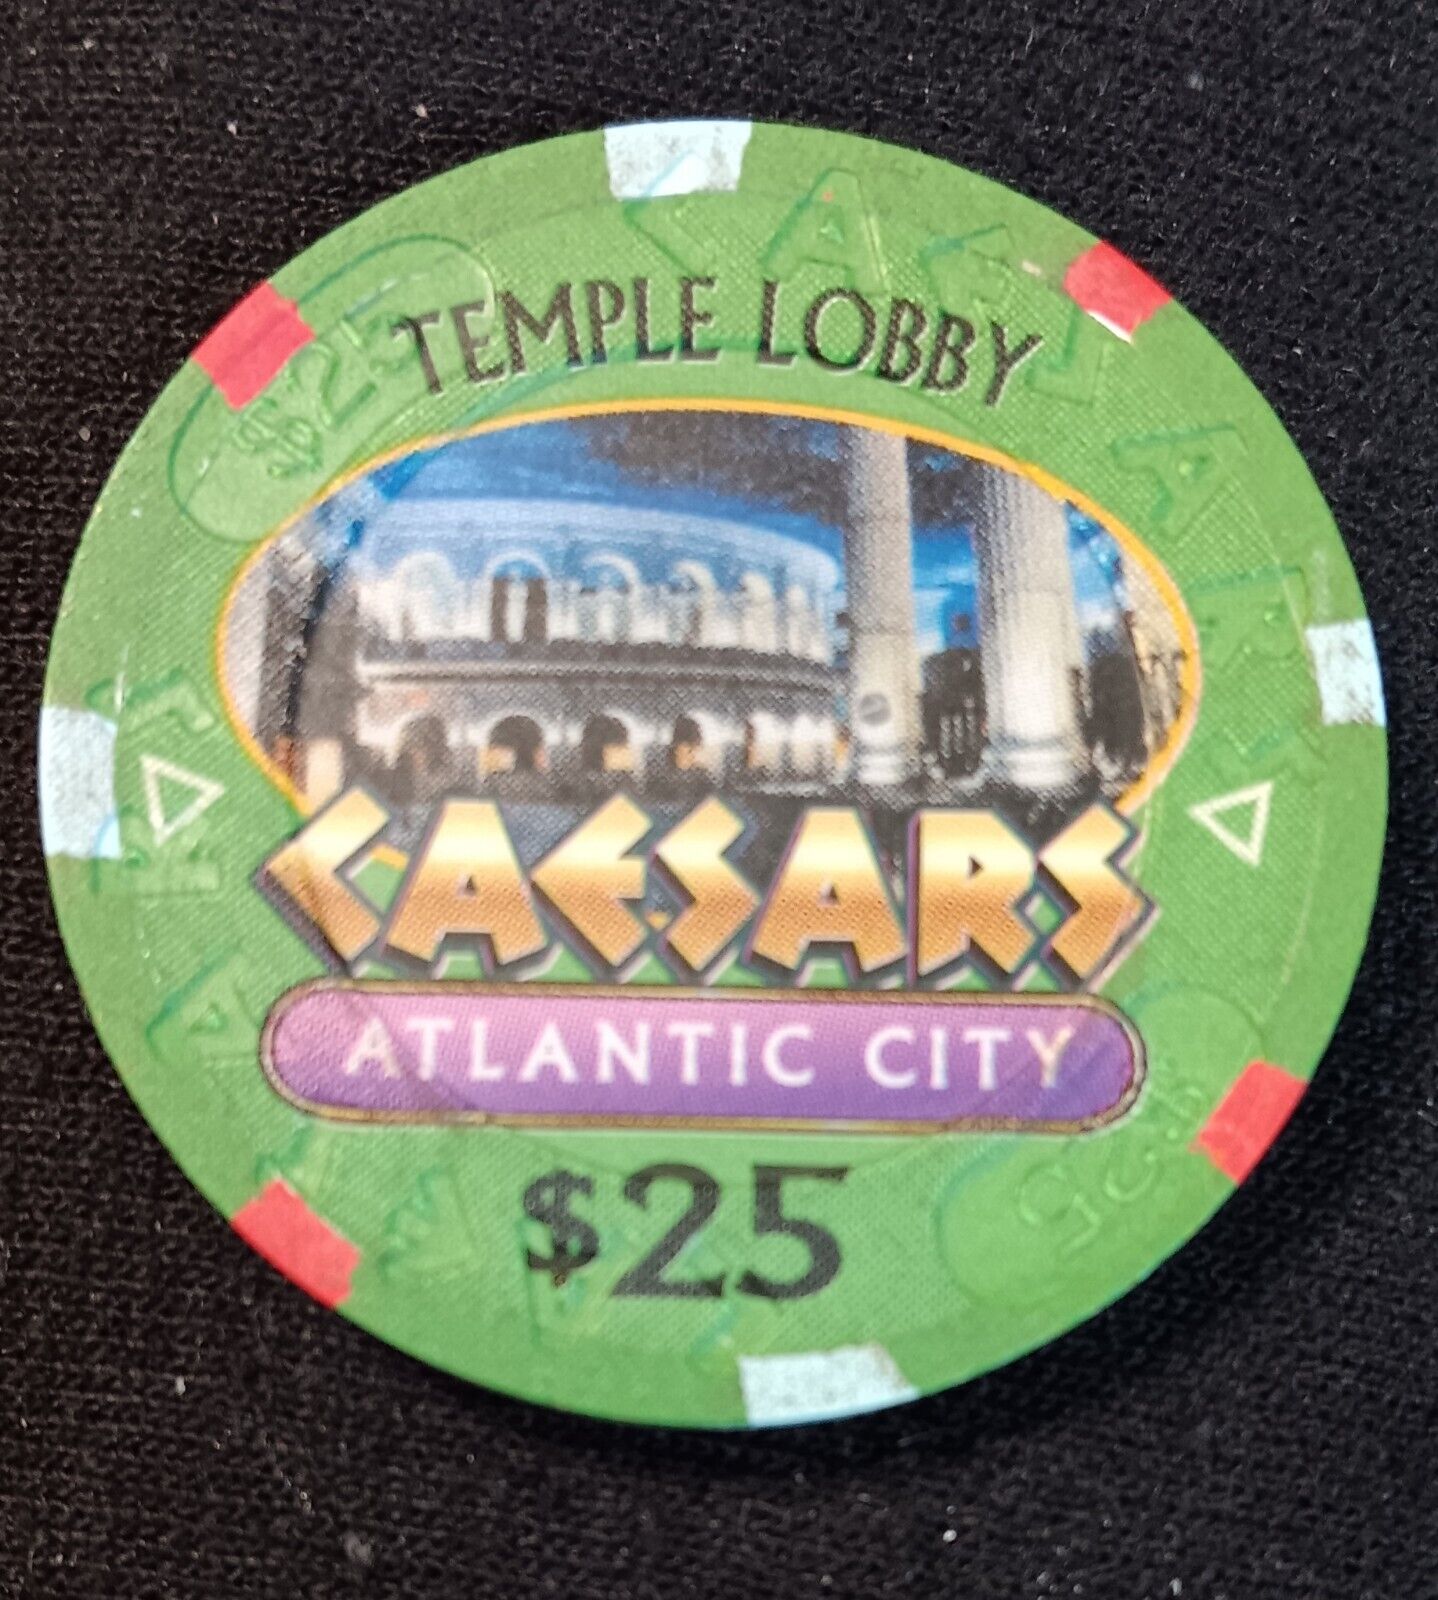 Caesars Atlantic City $25 Temple Lobby Chip #0864 Ltd Ed  Super Rare & Fabulous